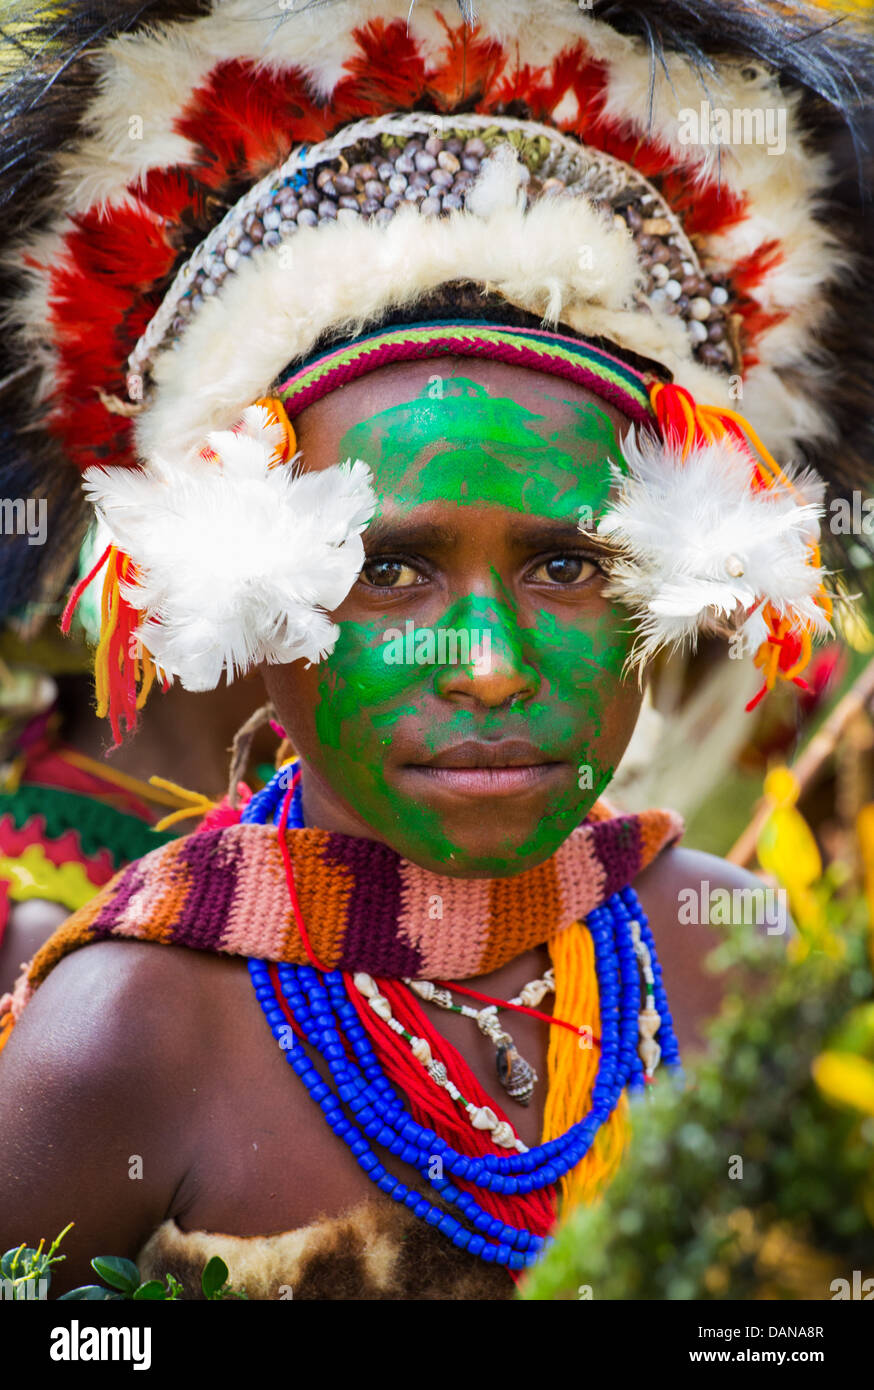 Porträt eines jungen Mädchens mit ihrem Gesicht grün lackiert und tragen eine traditionelle Kopfbedeckung auf der Goroka Show in Papua-Neu-Guinea. Stockfoto